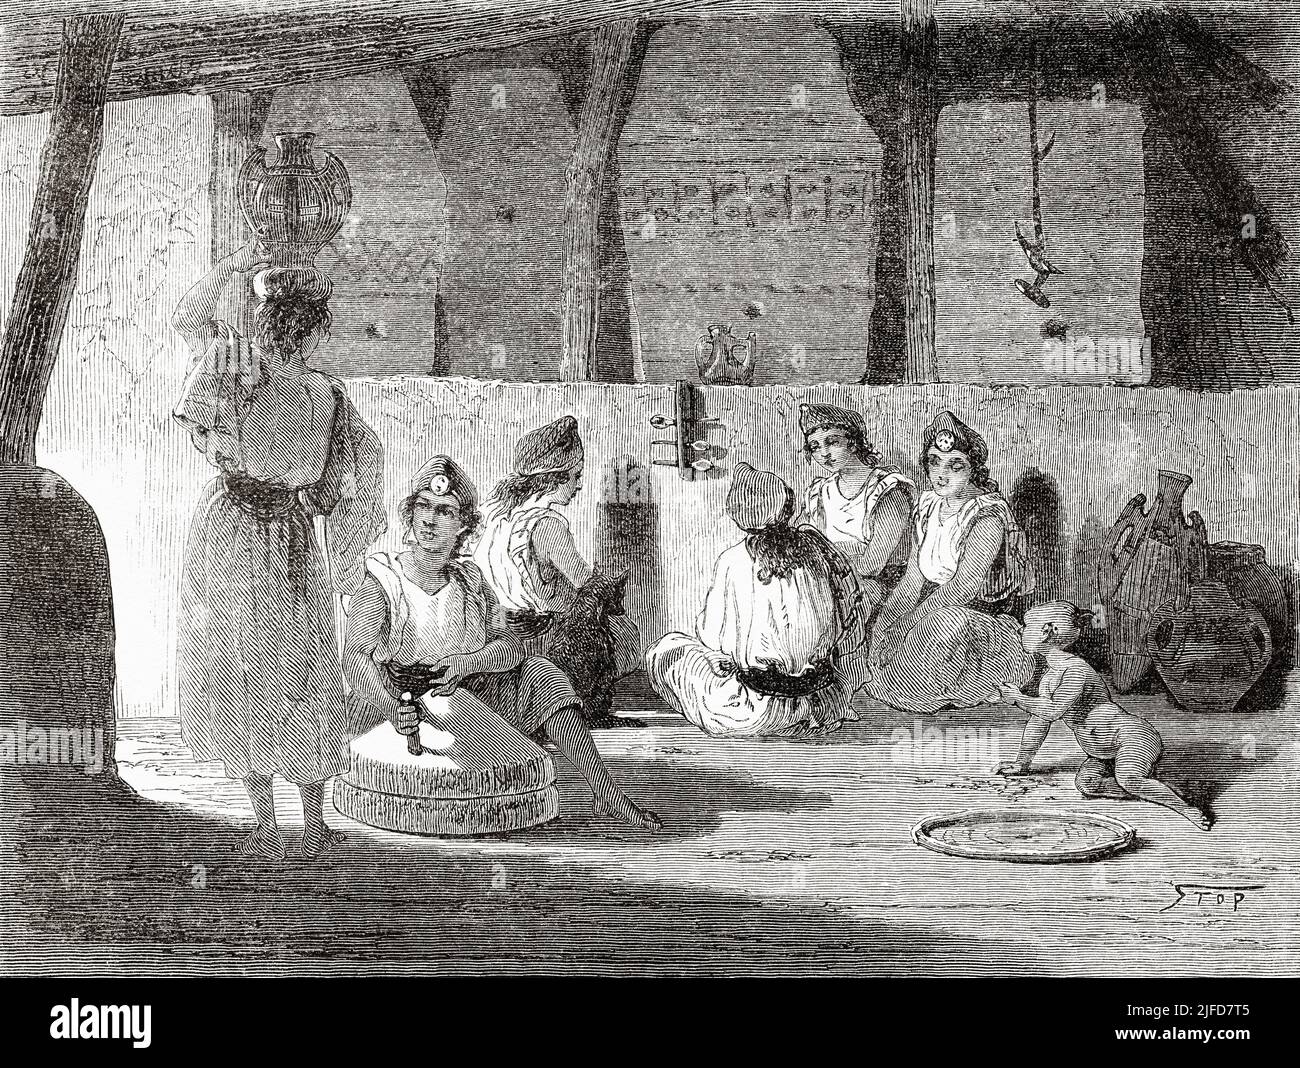 Femmes travaillant à meuler du blé avec des meules, Kabylie. Algérie du Nord, Afrique. Excursion en Grande Kabylie par le commandant Emile Duhousset 1864 depuis le Tour du monde 1867 Banque D'Images